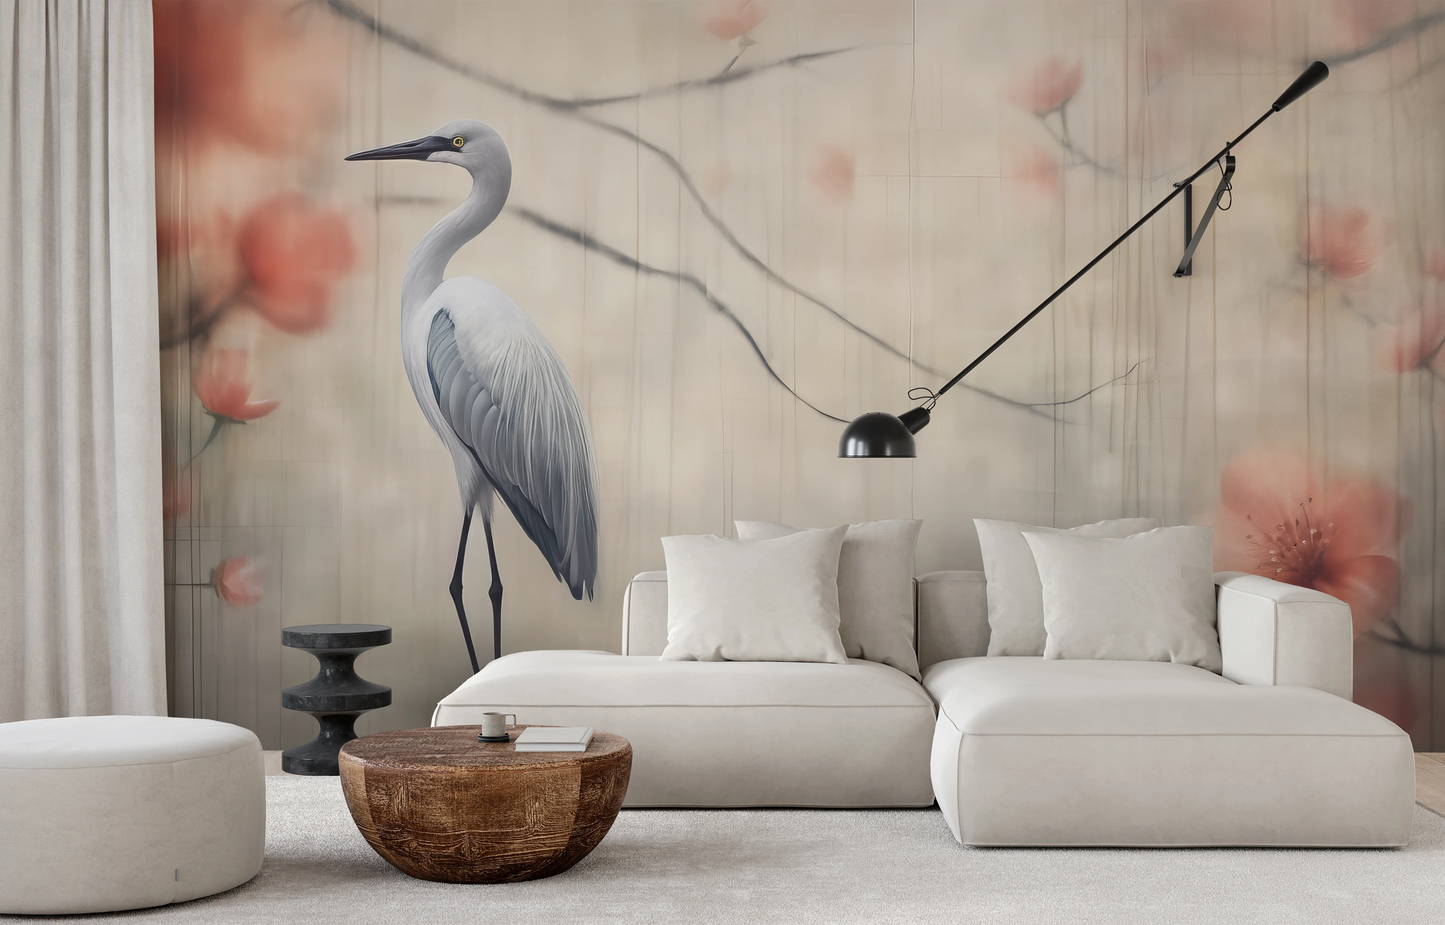 Fototapeta malowana o nazwie Heron's Realm pokazana w aranżacji wnętrza.